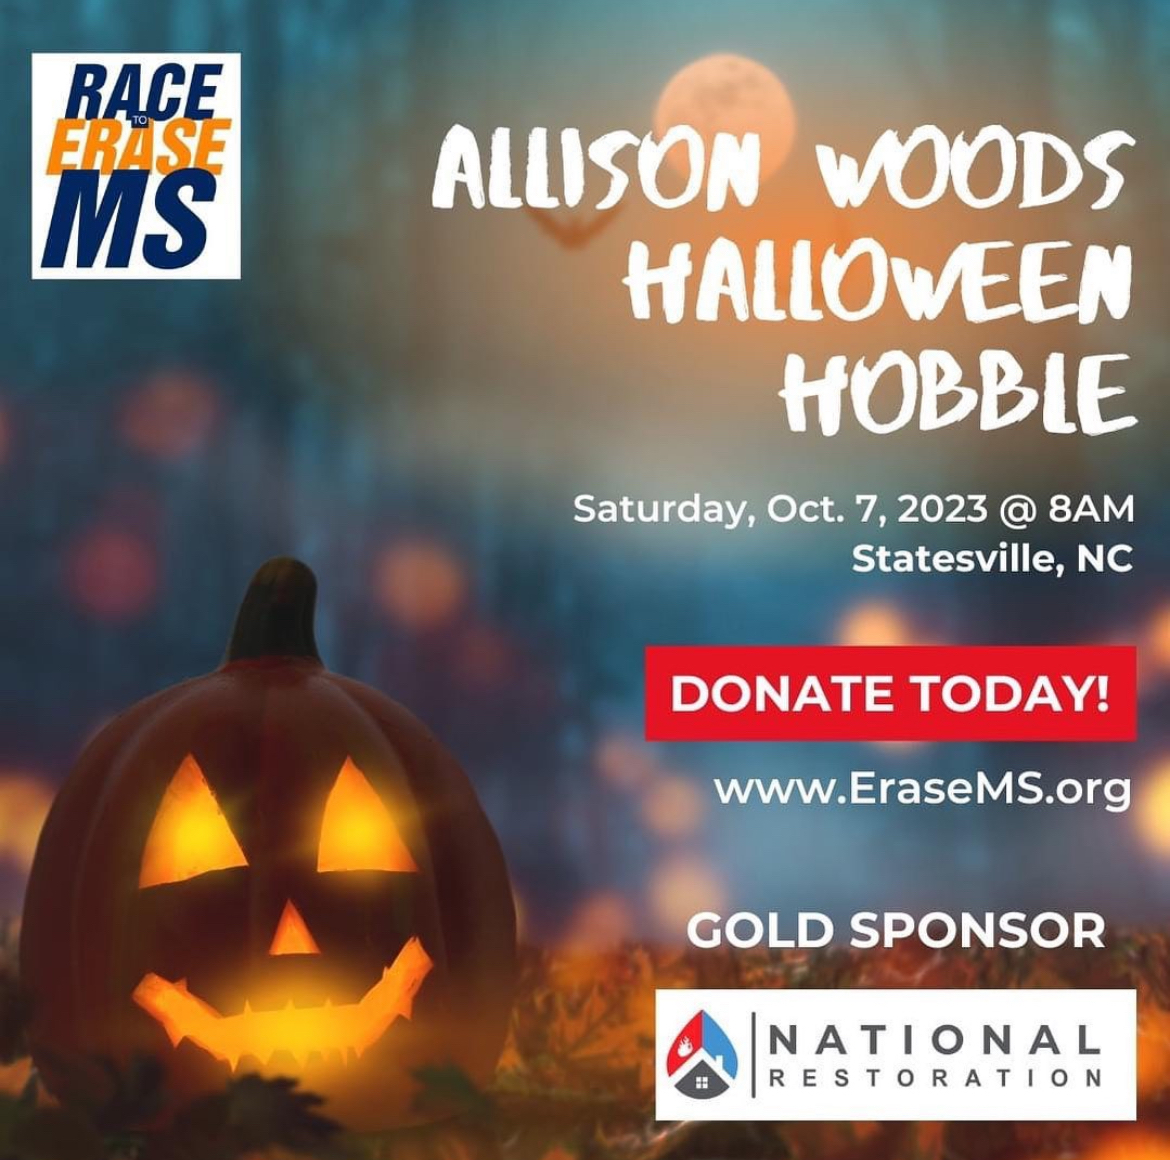 Allison Wood Halloween Hobbie Saturday, Oct. 7, 2023 at 8 am in Statesville, NC